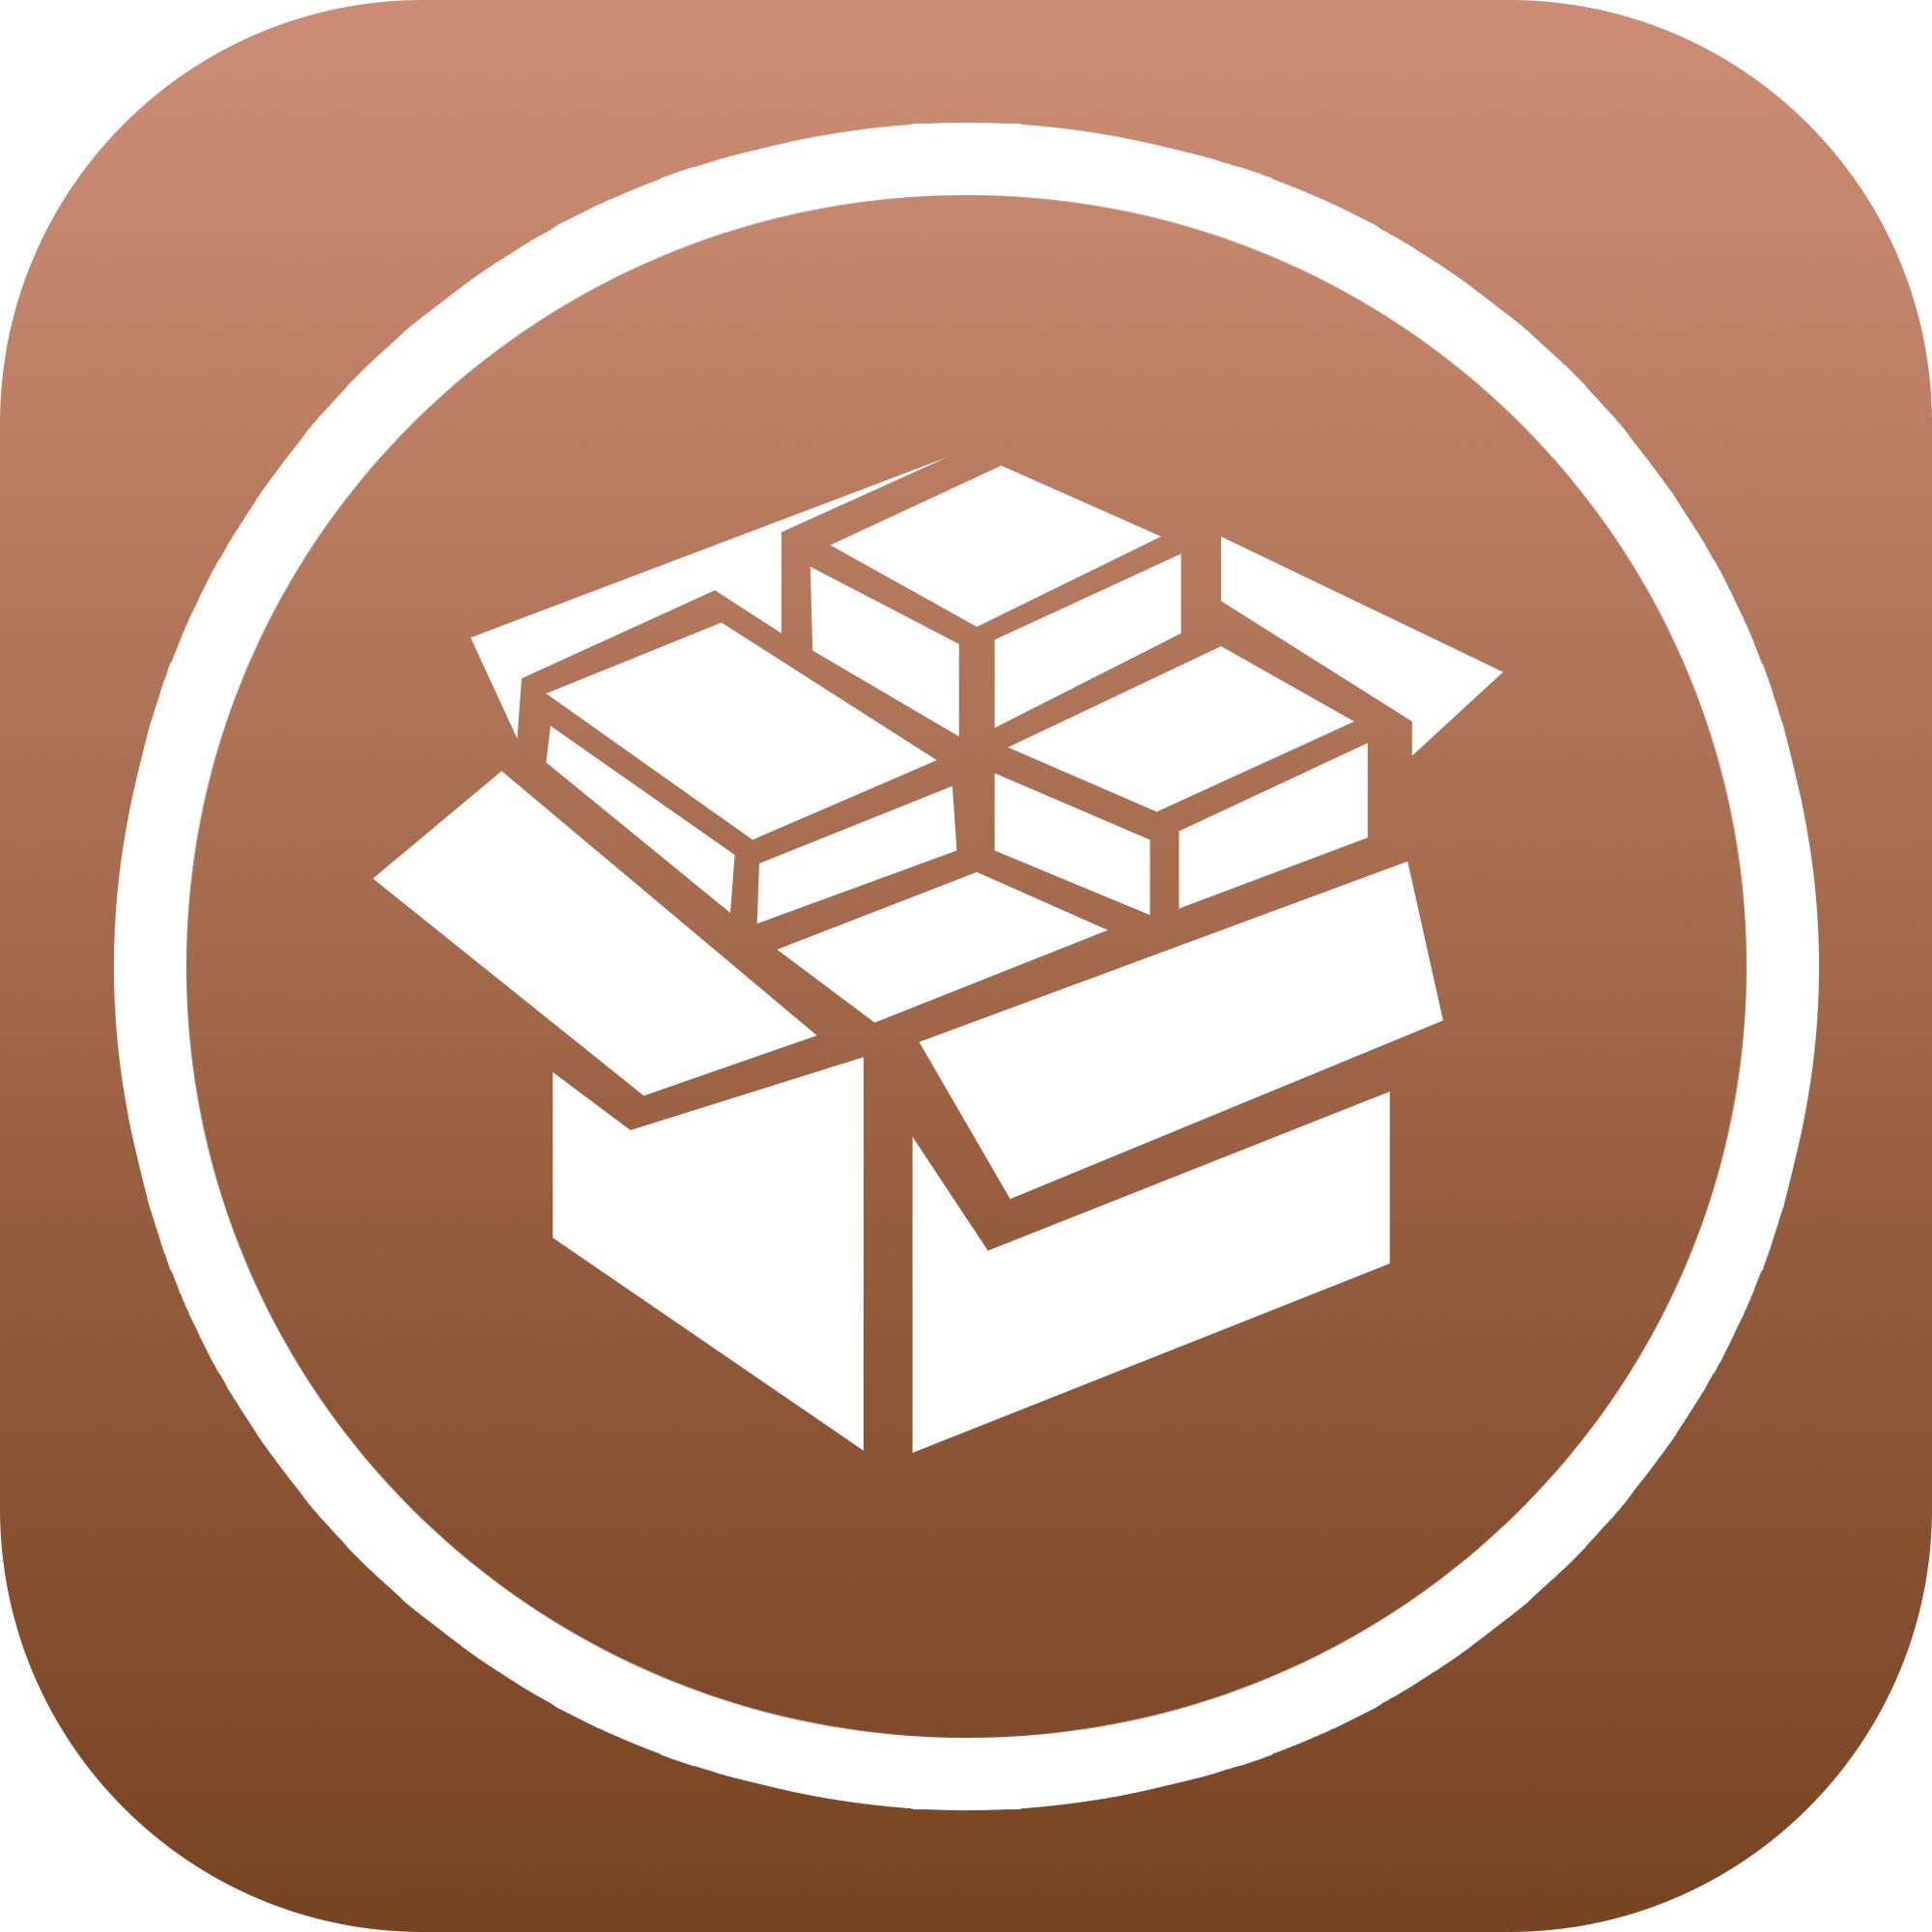 GUIDA: Come installare automaticamente Cydia su iOS 8